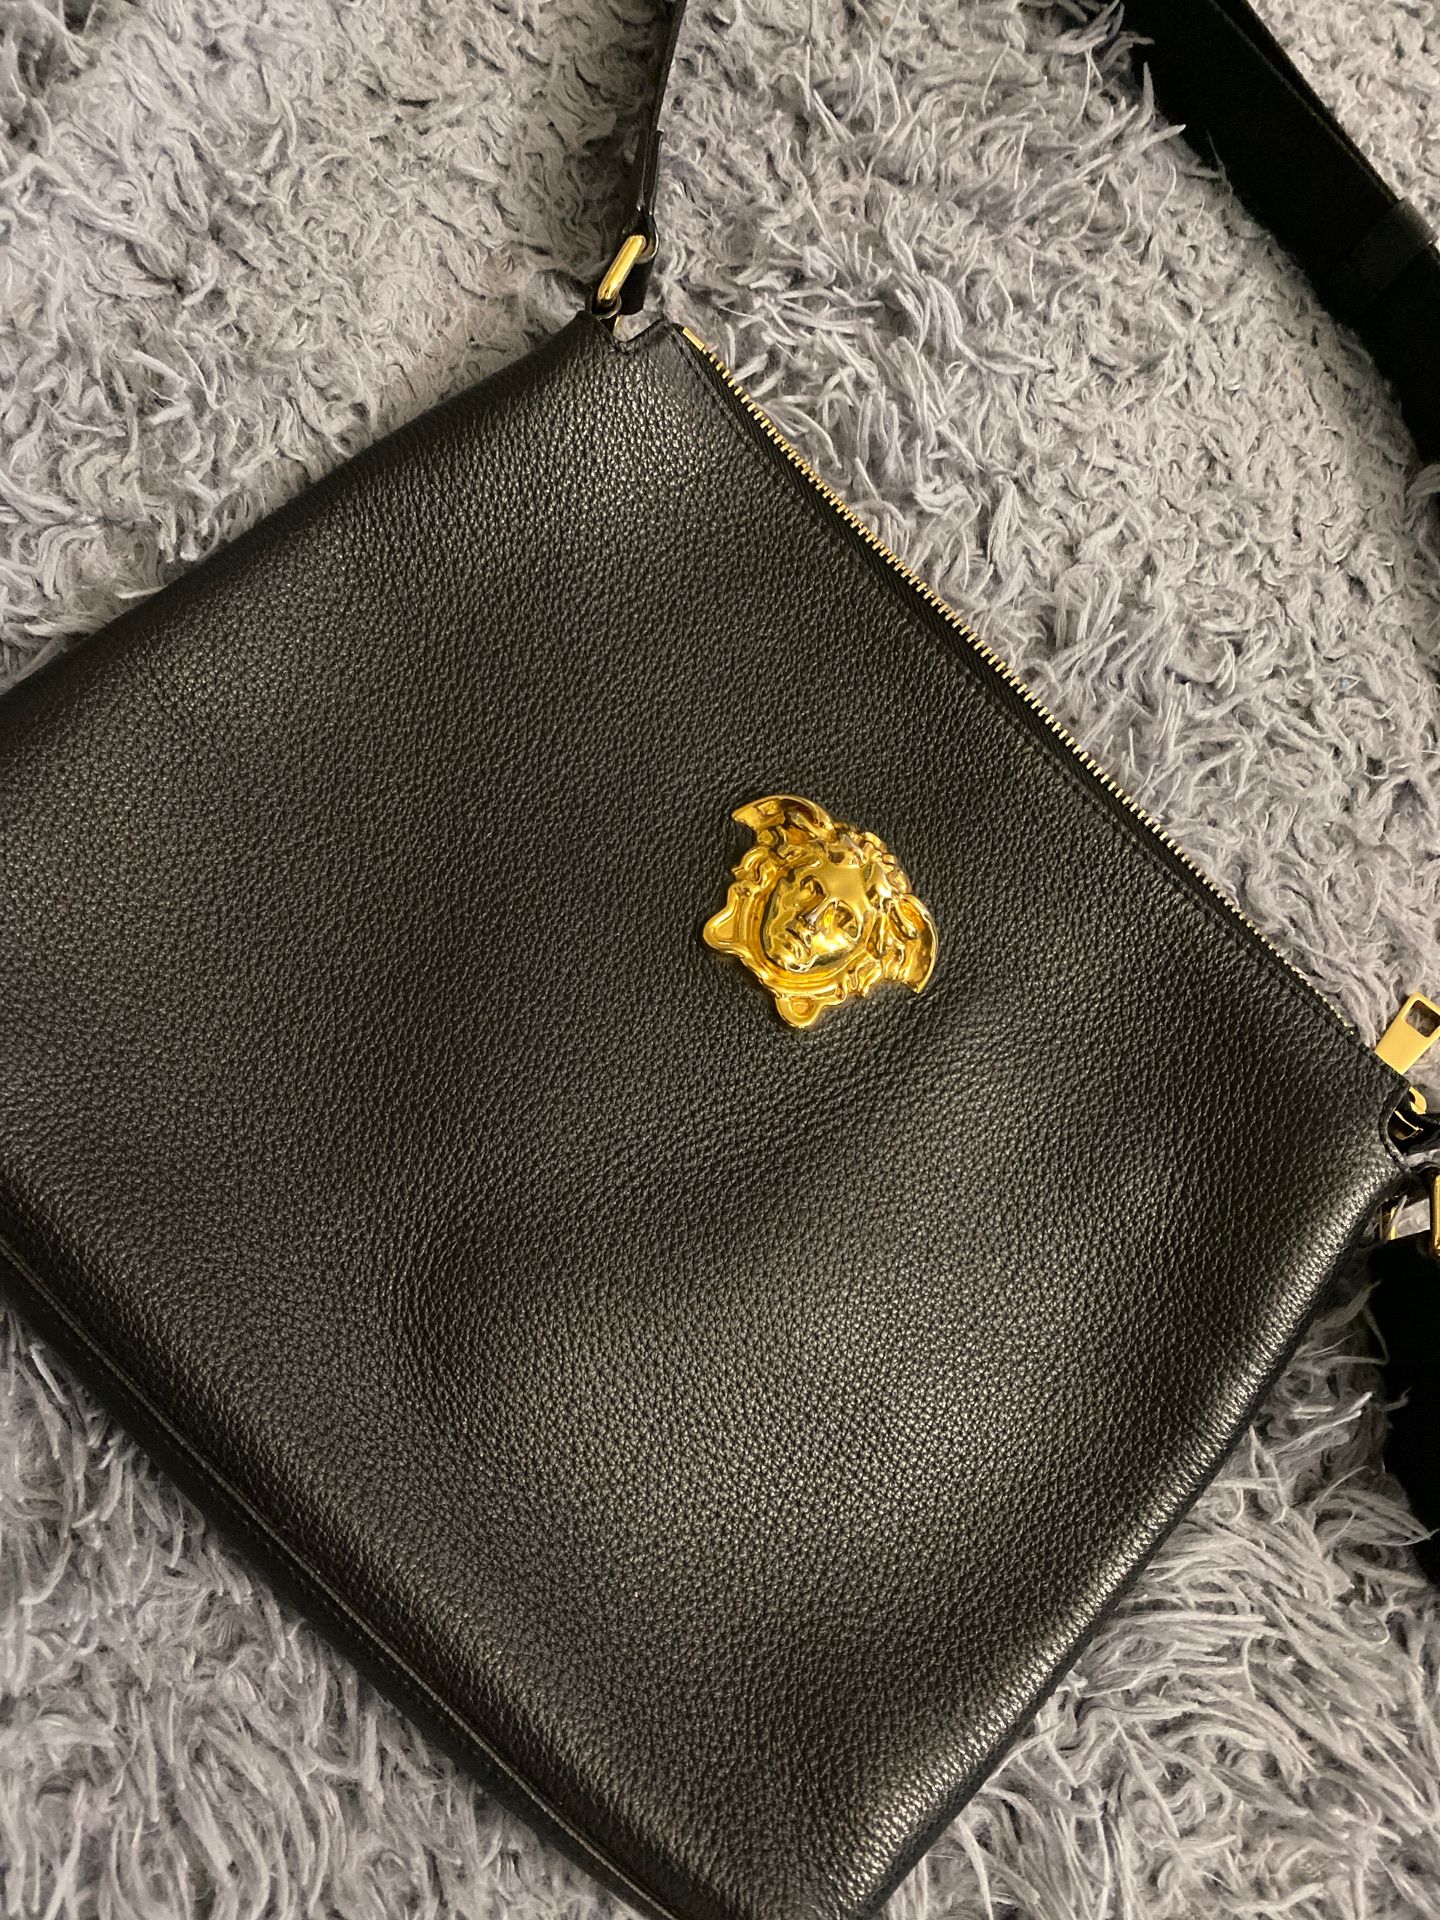 Versace satchel